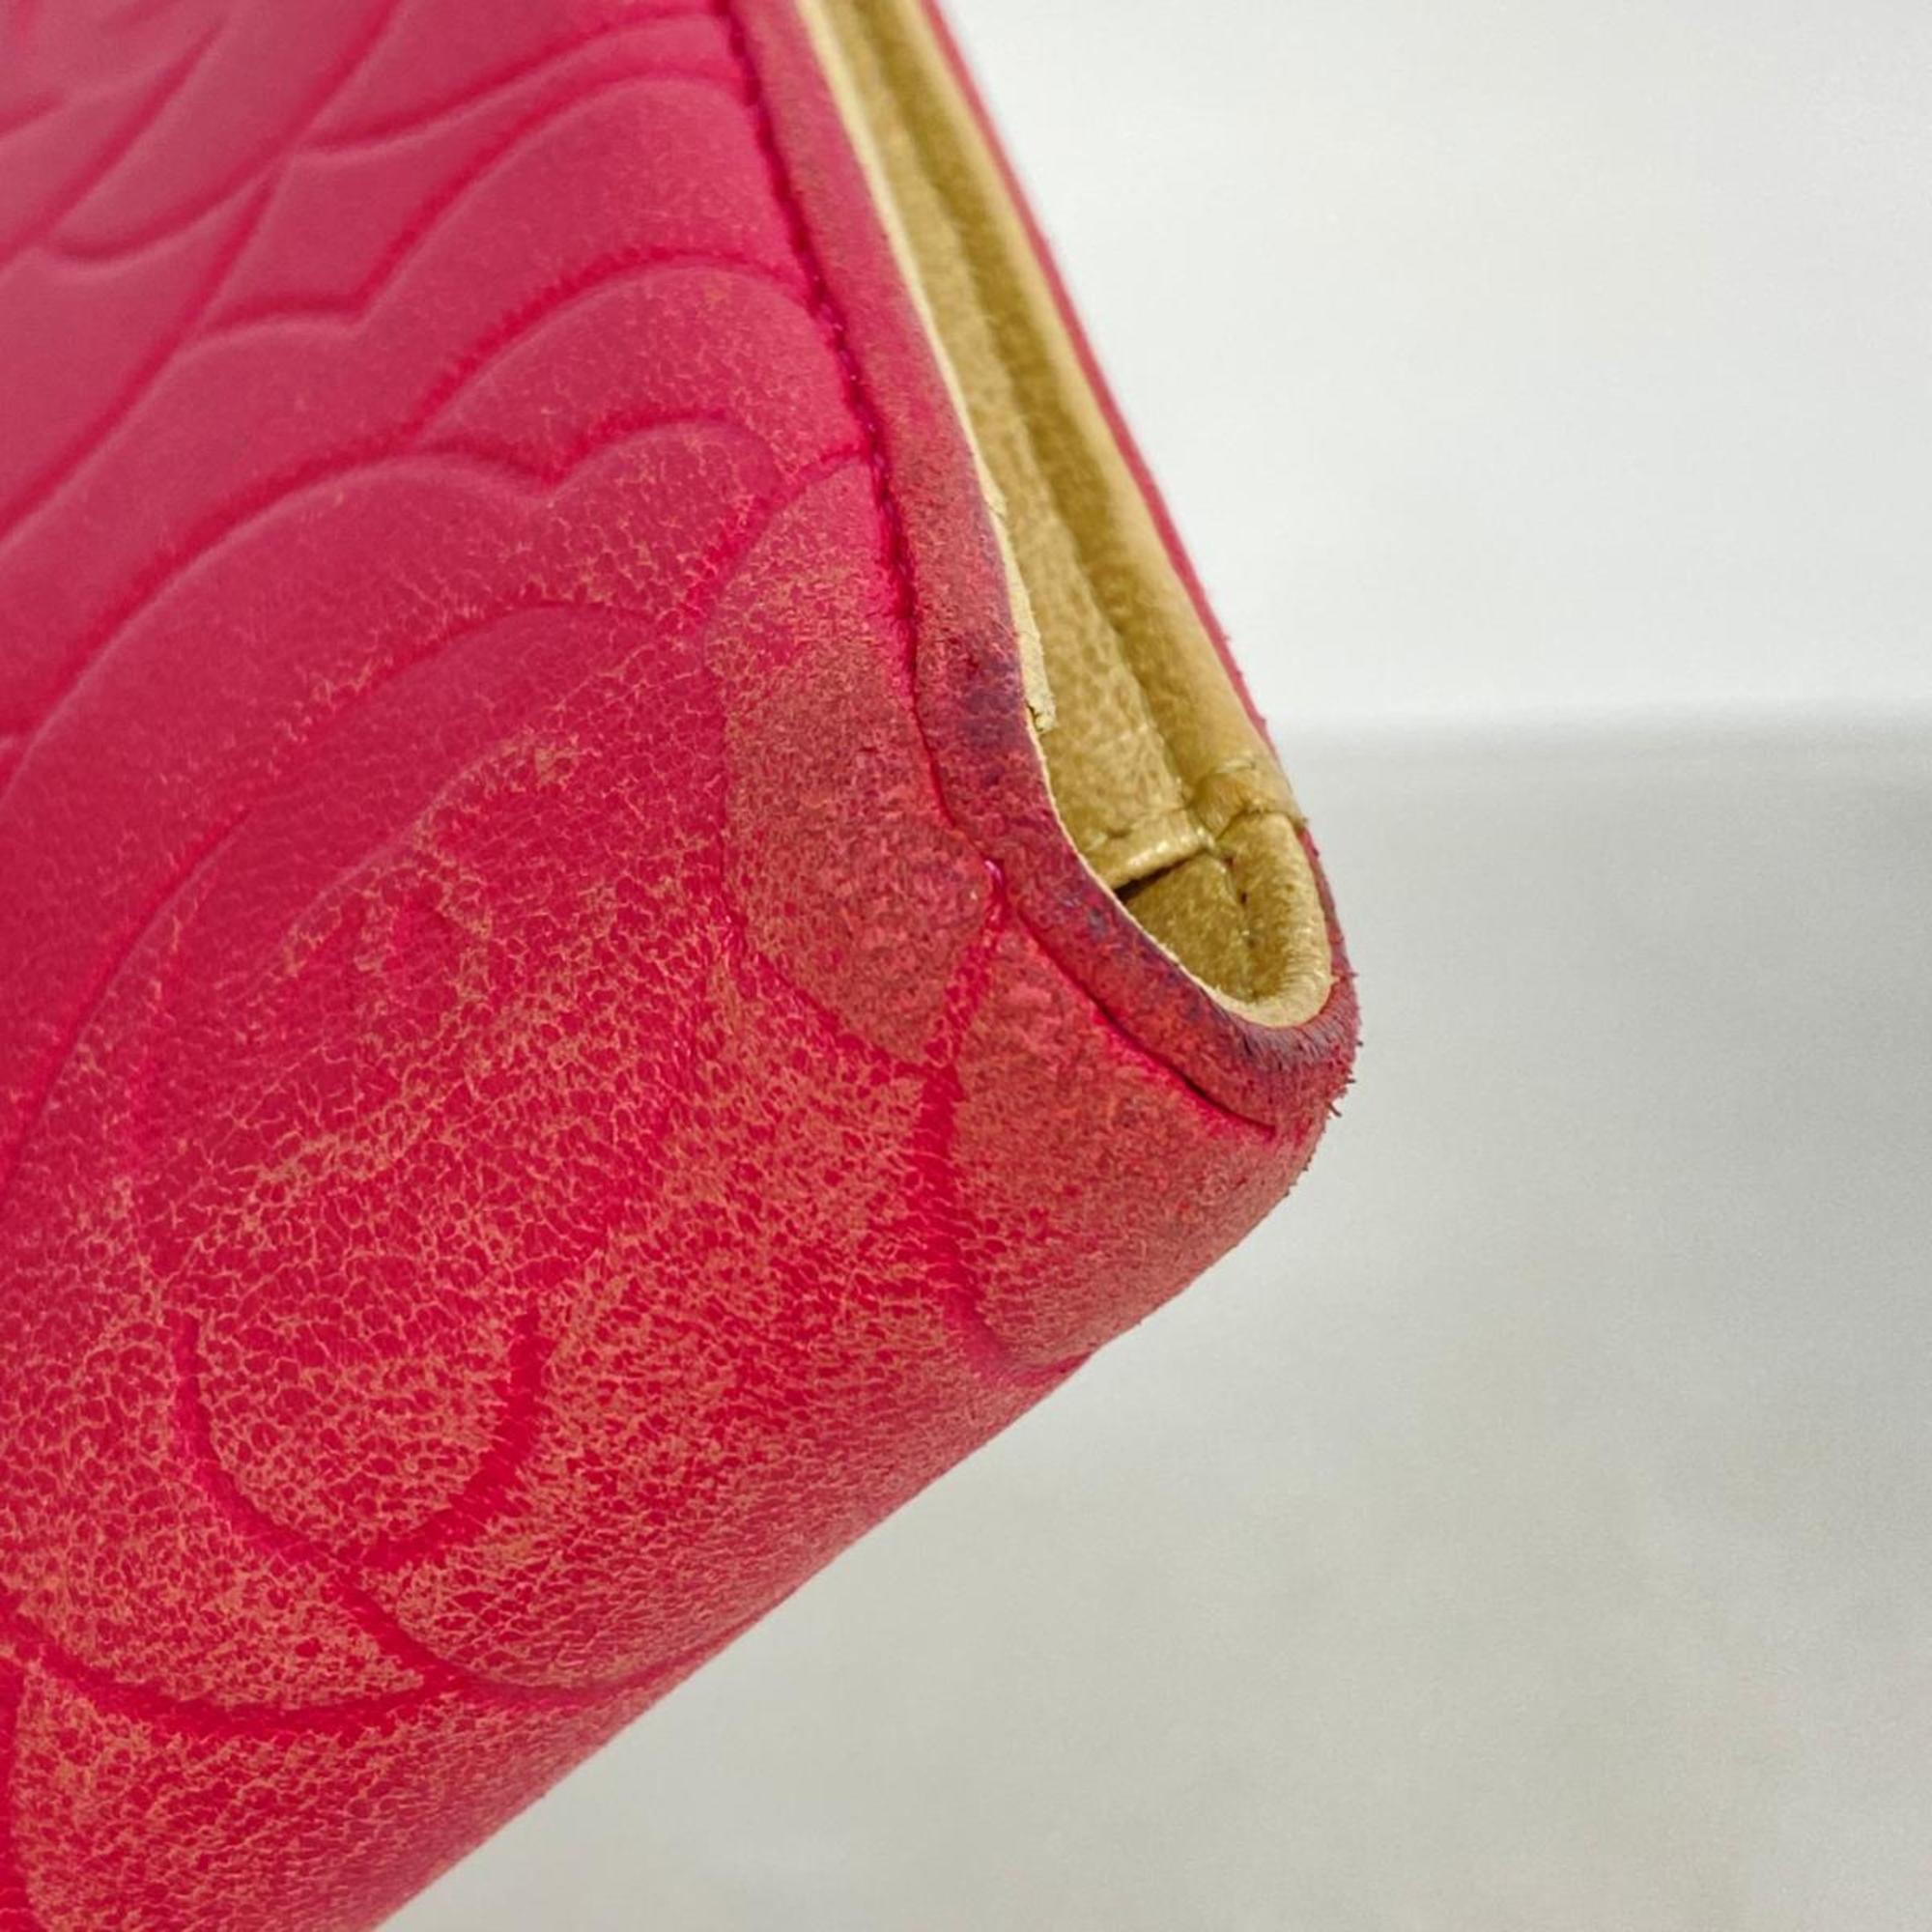 シャネル(Chanel) シャネル 長財布 カメリア レザー ピンク シャンパン  レディース